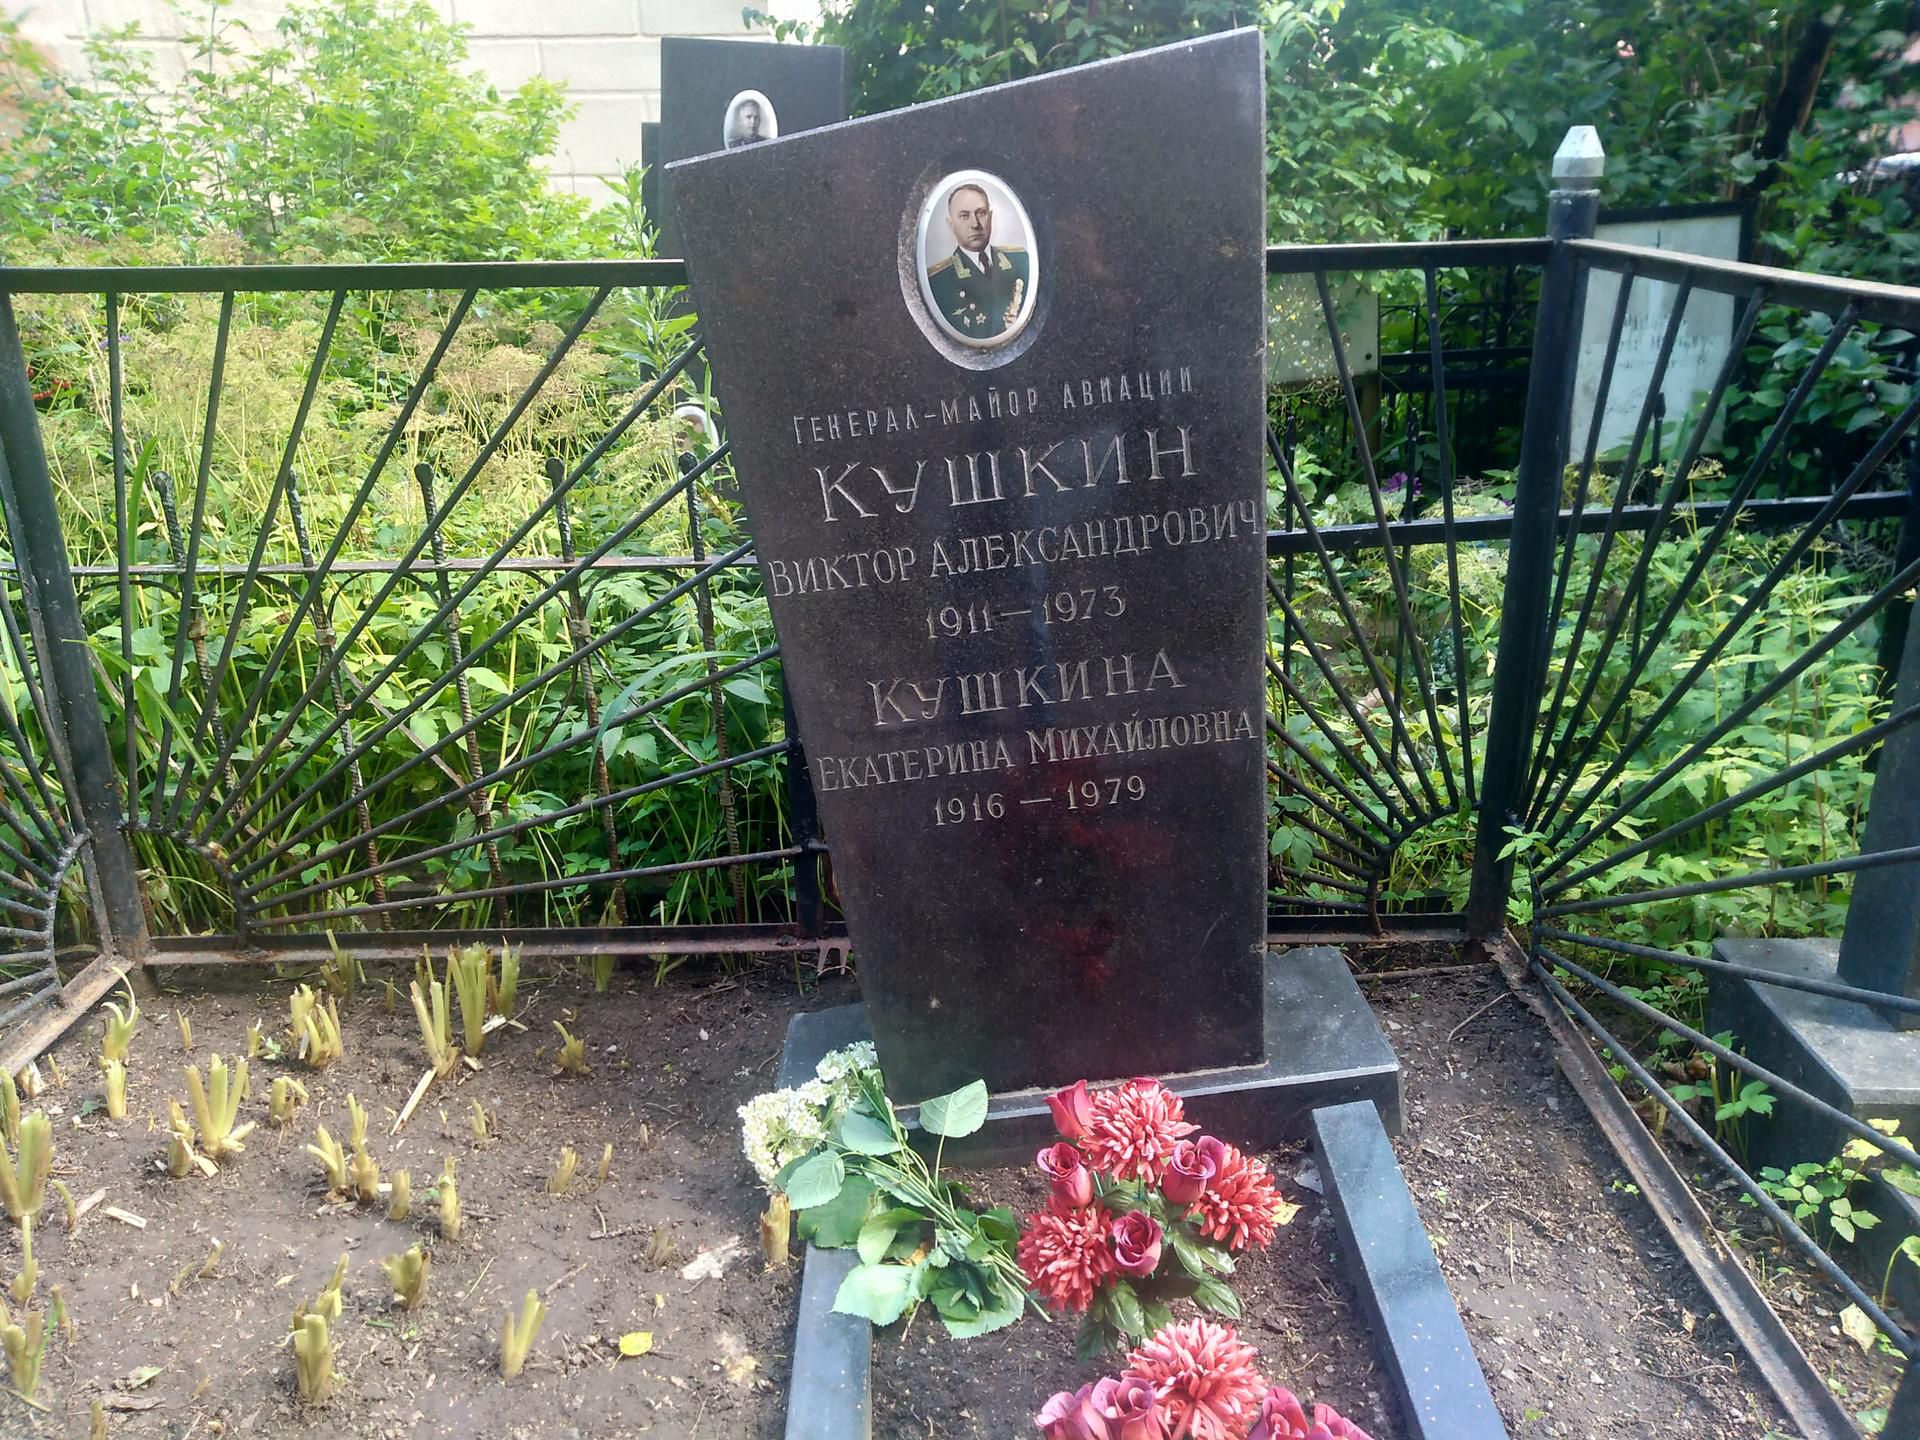 Кукушкина Екатерина Михайловна, 1916 – 1979